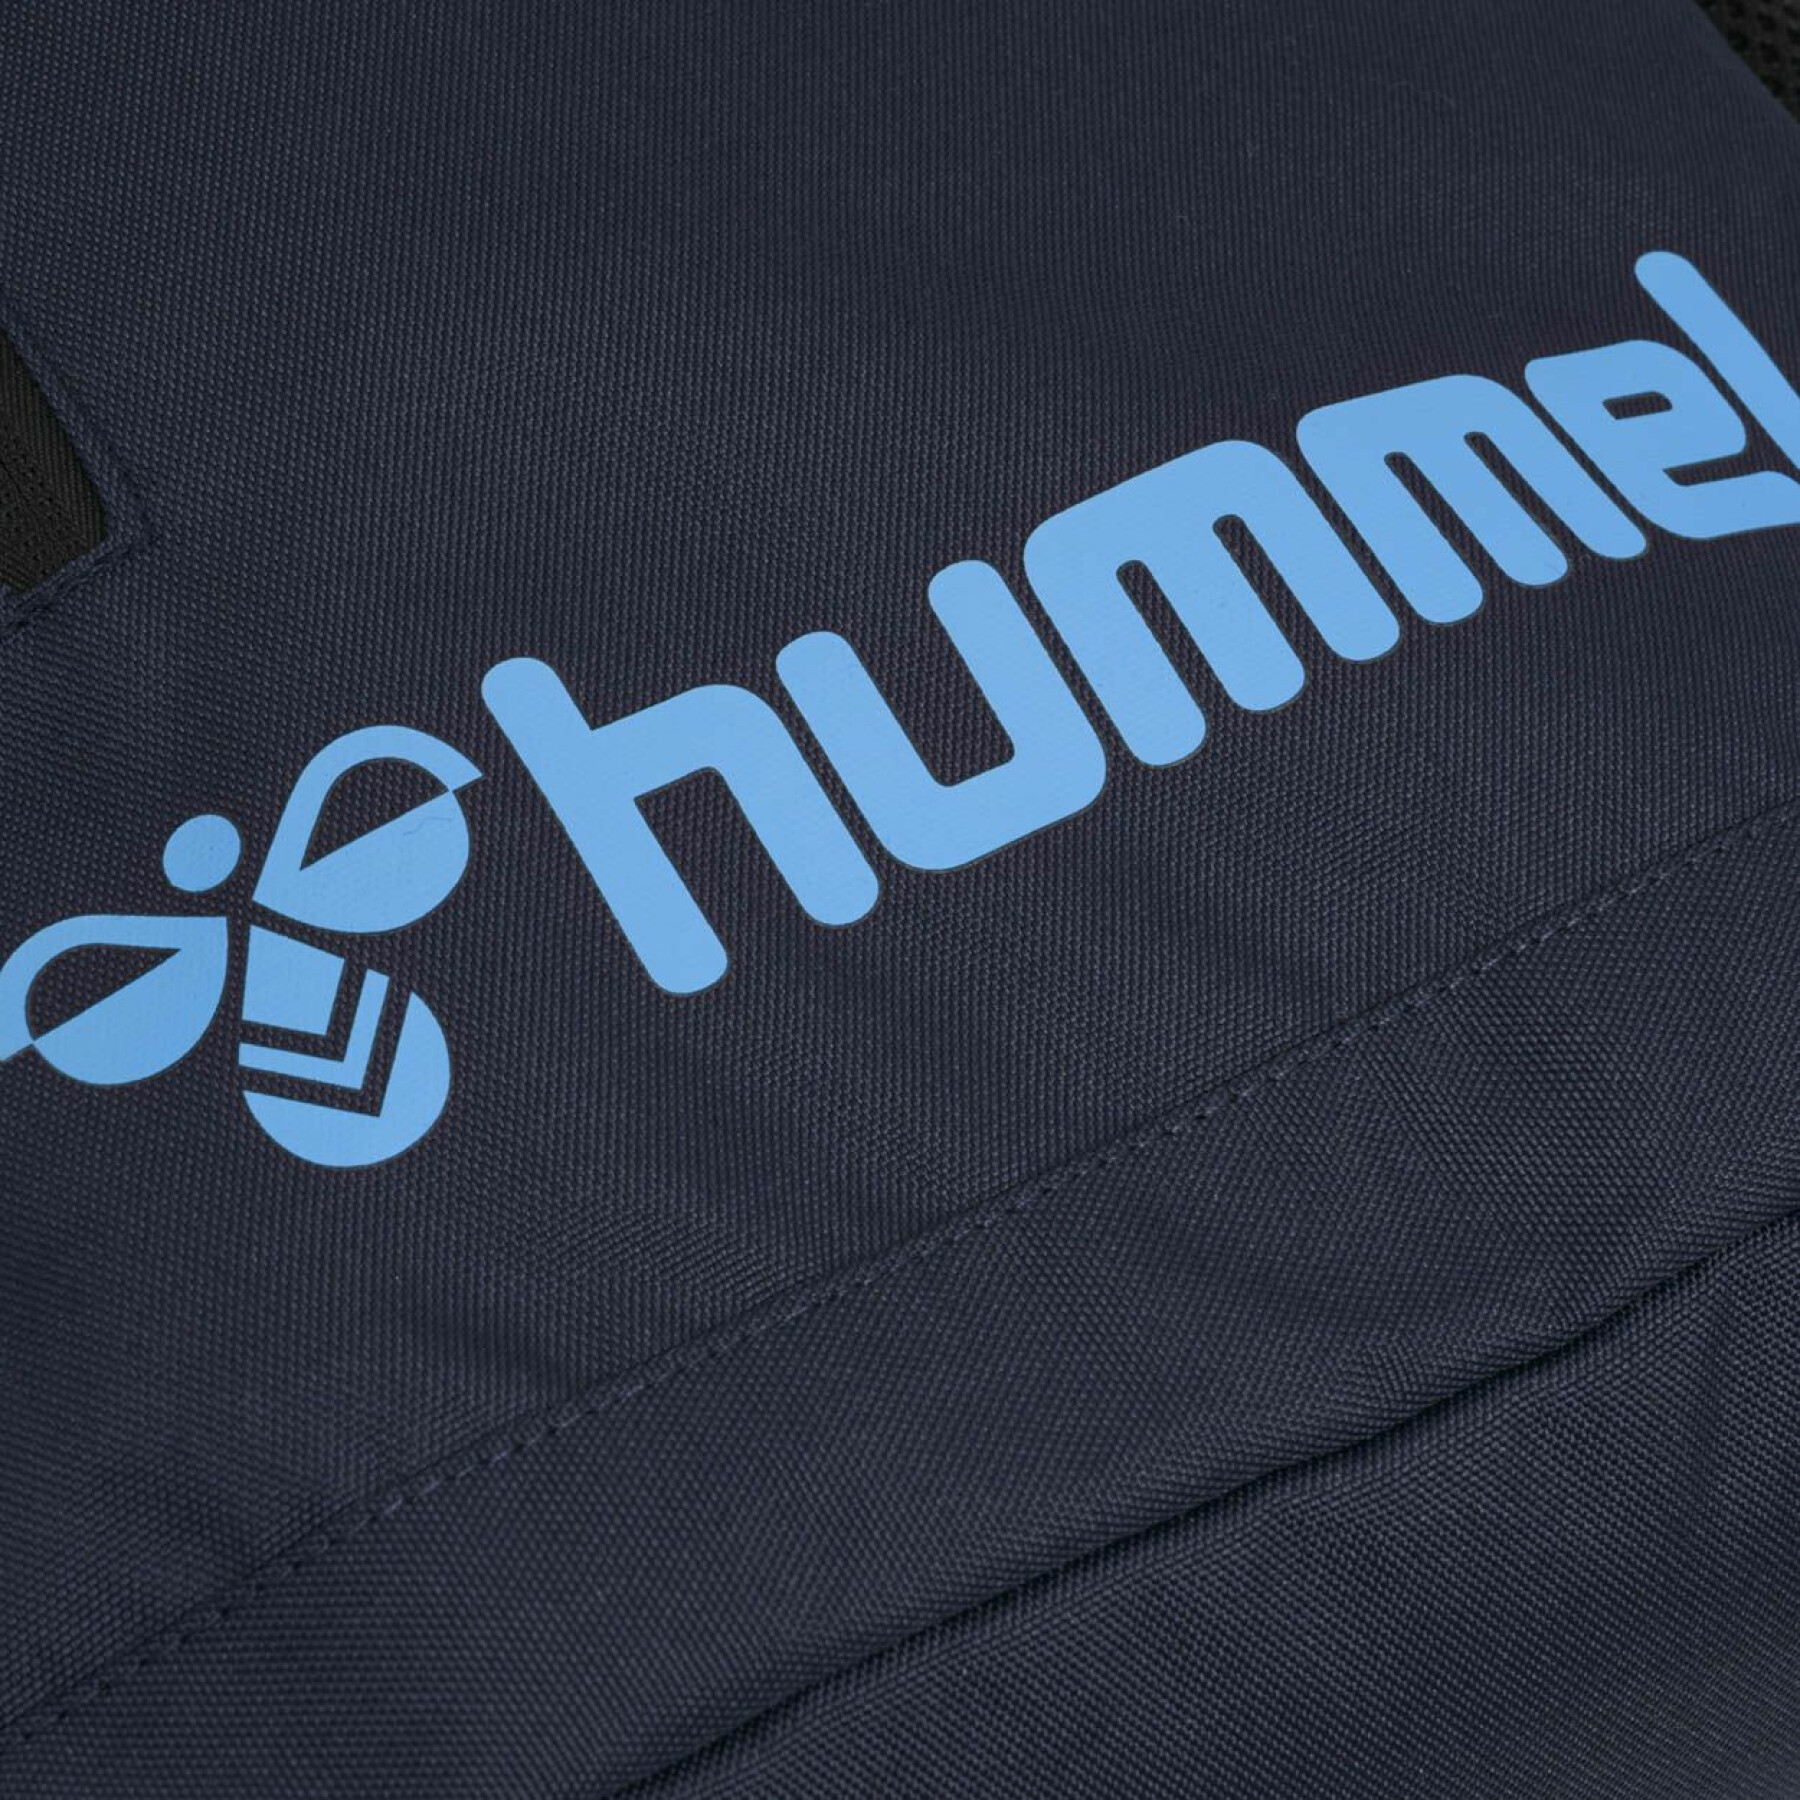 Plecak Hummel hmlACTION